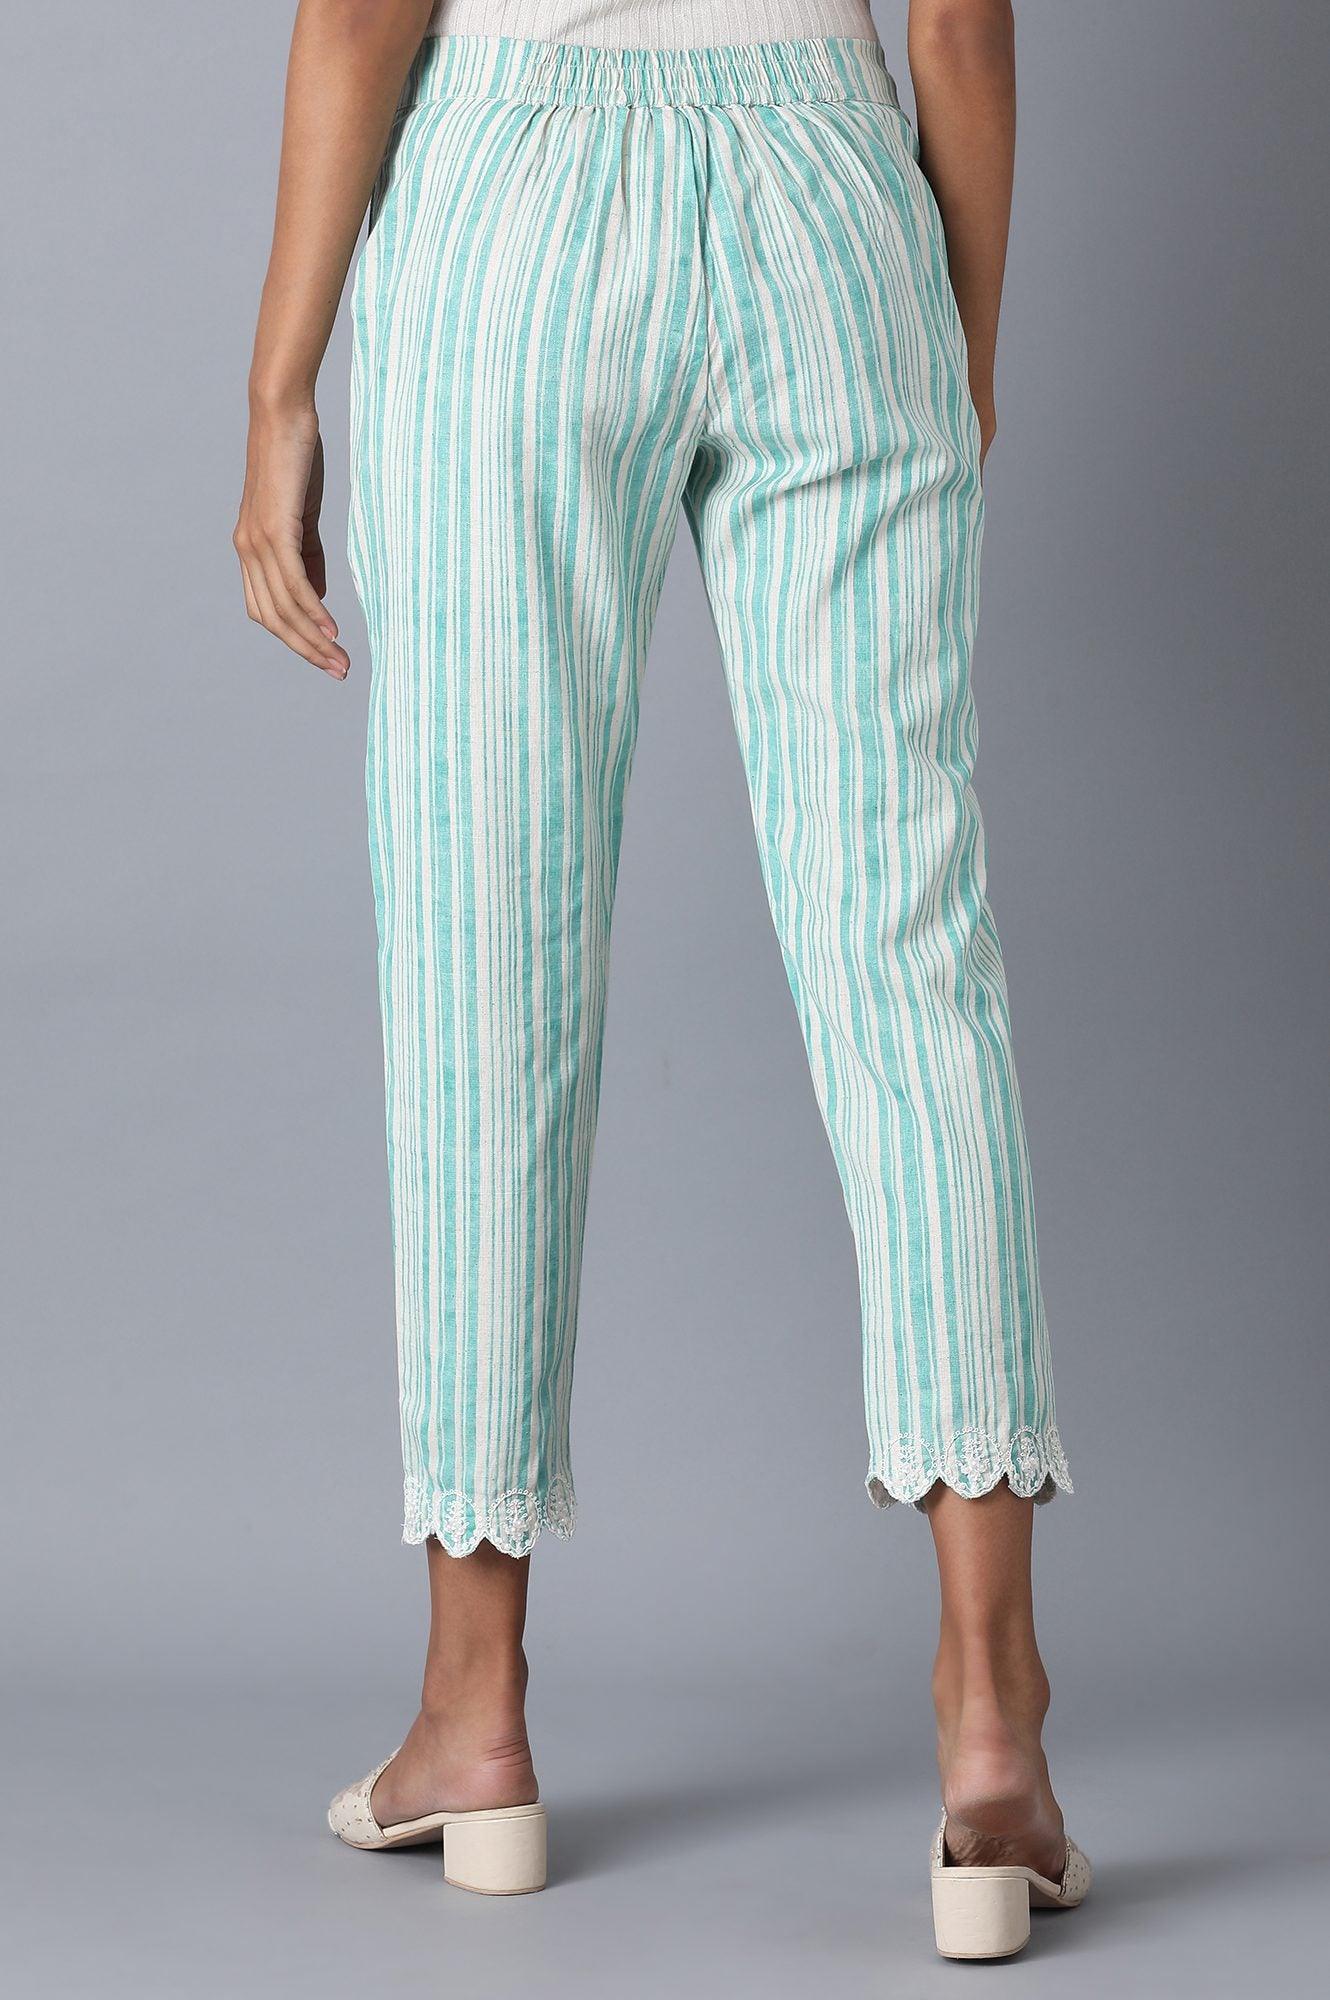 Light Blue Stripes Slim Pants - wforwoman